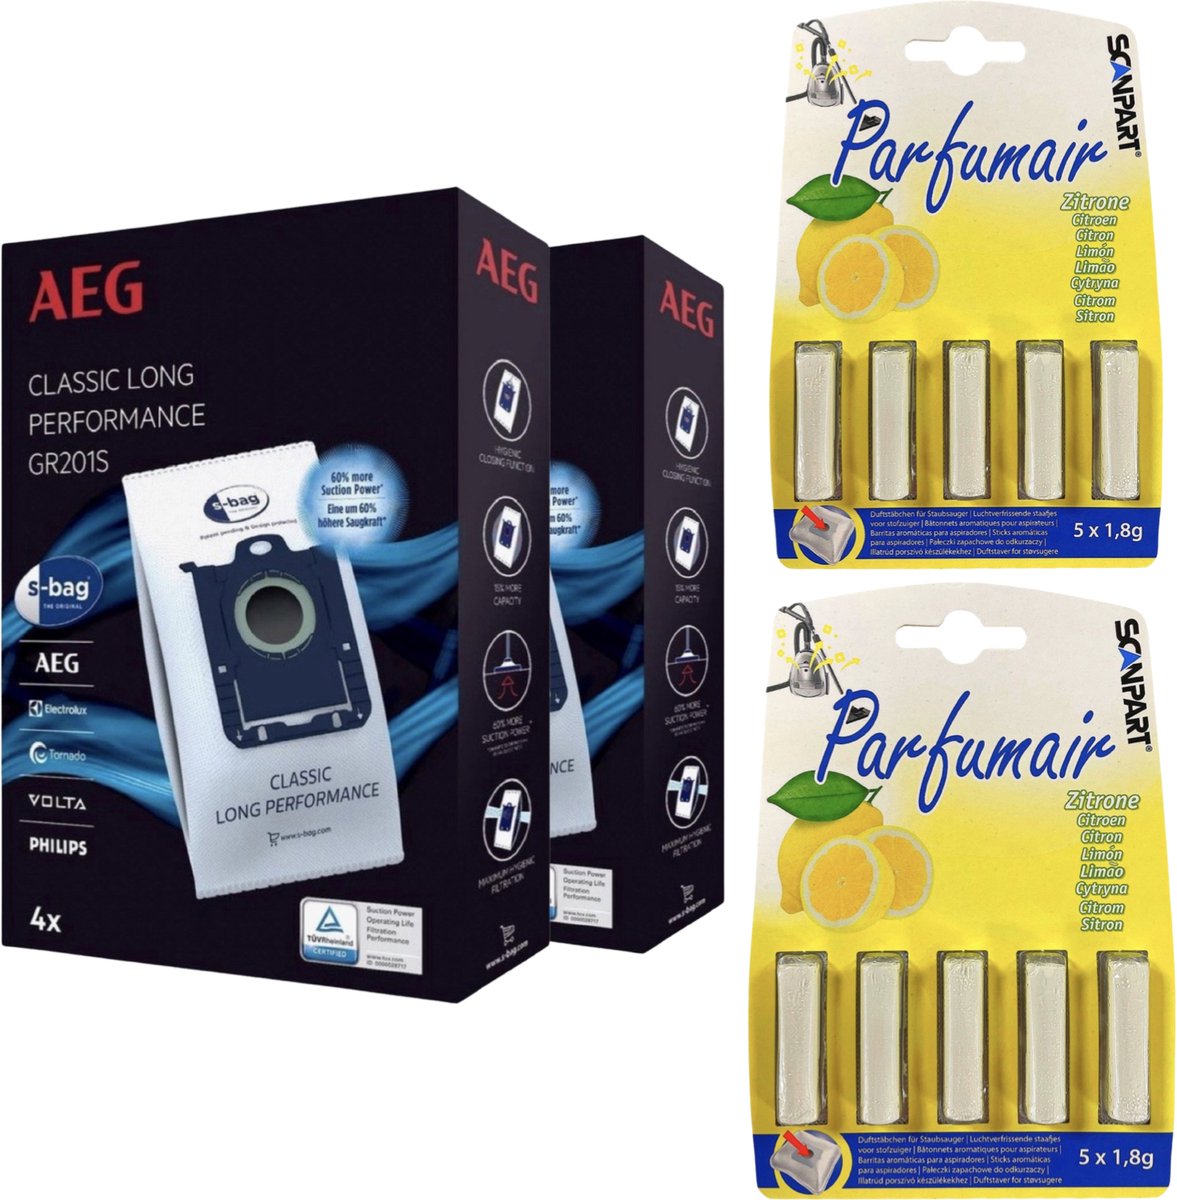 AEG - 2x S-BAG stofzuigerzakken - met citroengeur - 2x Geurstaven (5 stuks) - Voor een frisse geur - COMBIDEAL